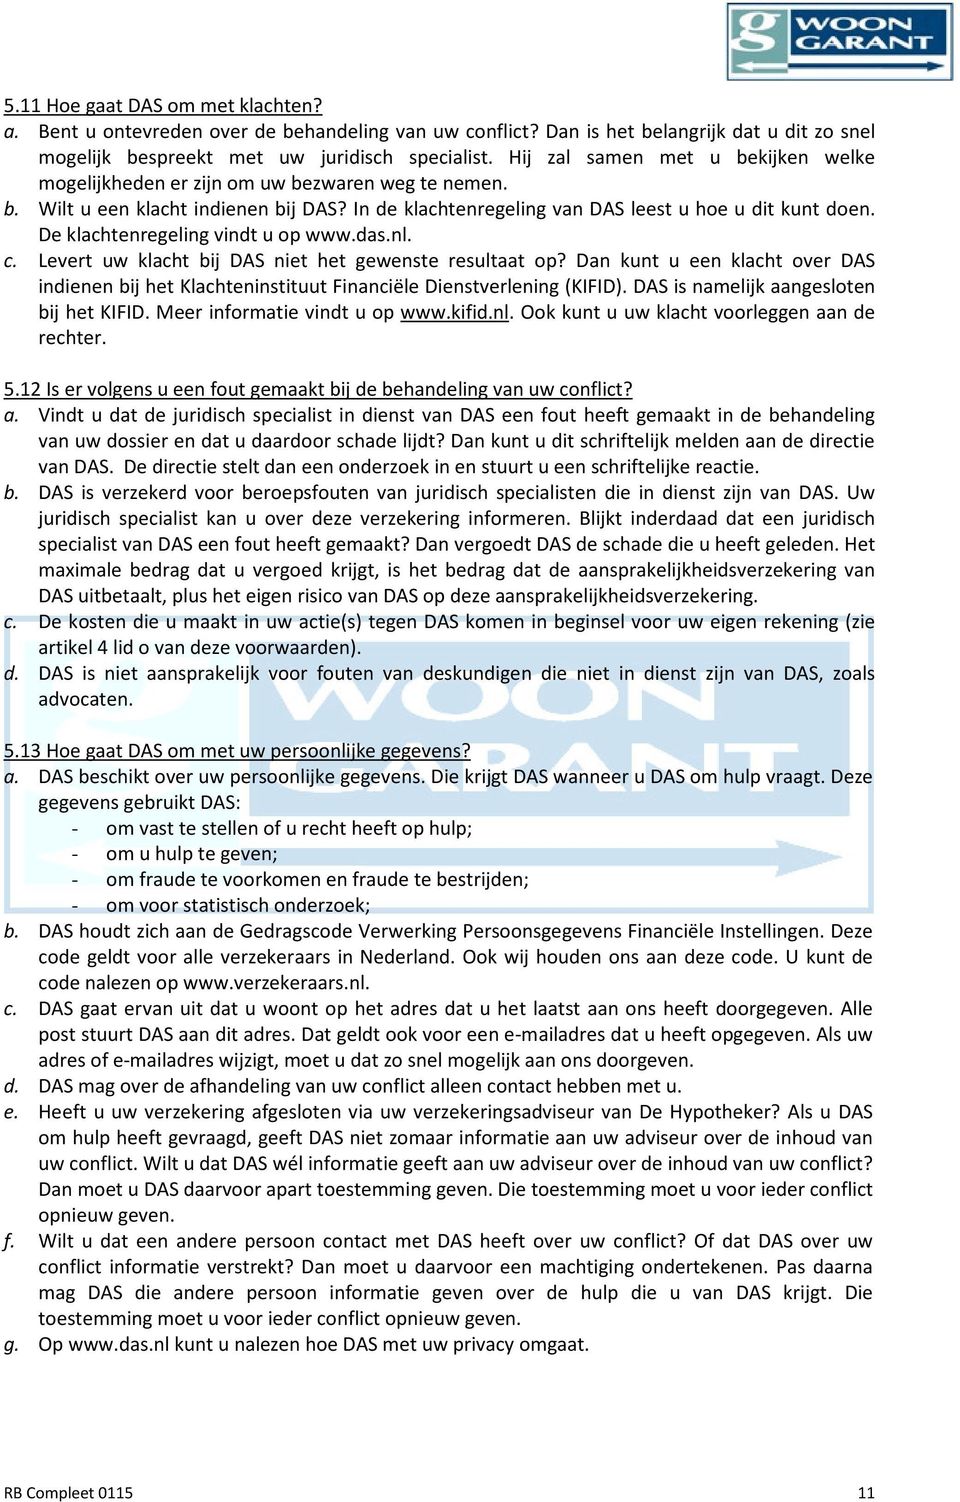 De klachtenregeling vindt u op www.das.nl. c. Levert uw klacht bij DAS niet het gewenste resultaat op?